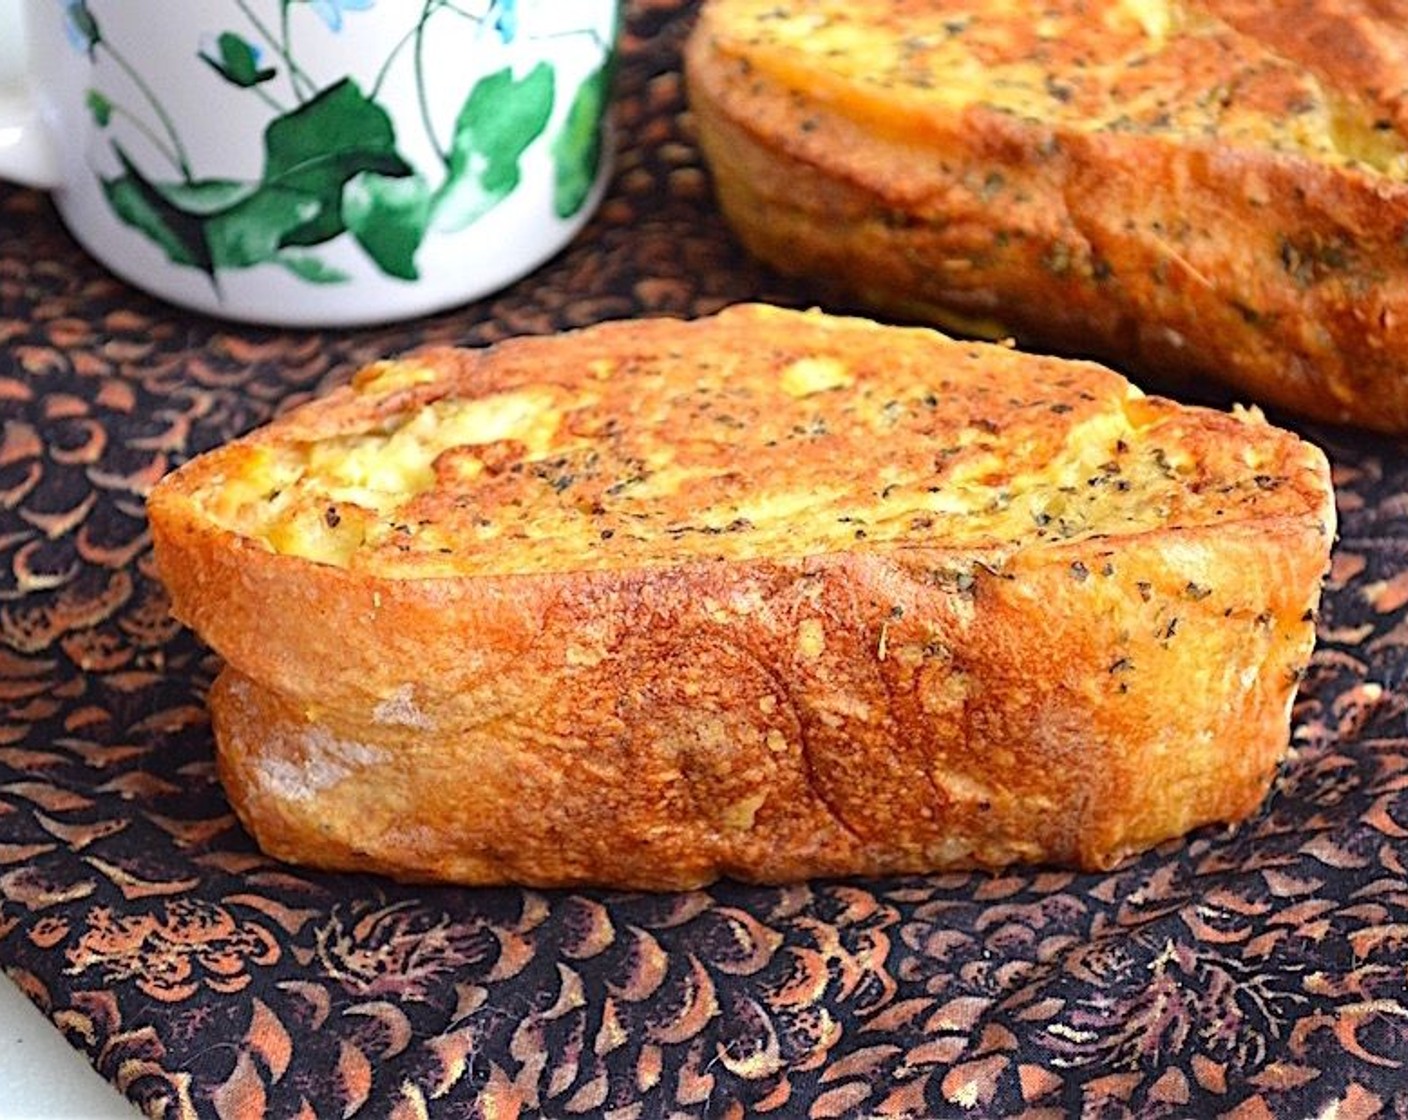 Savory Stuffed French Toast